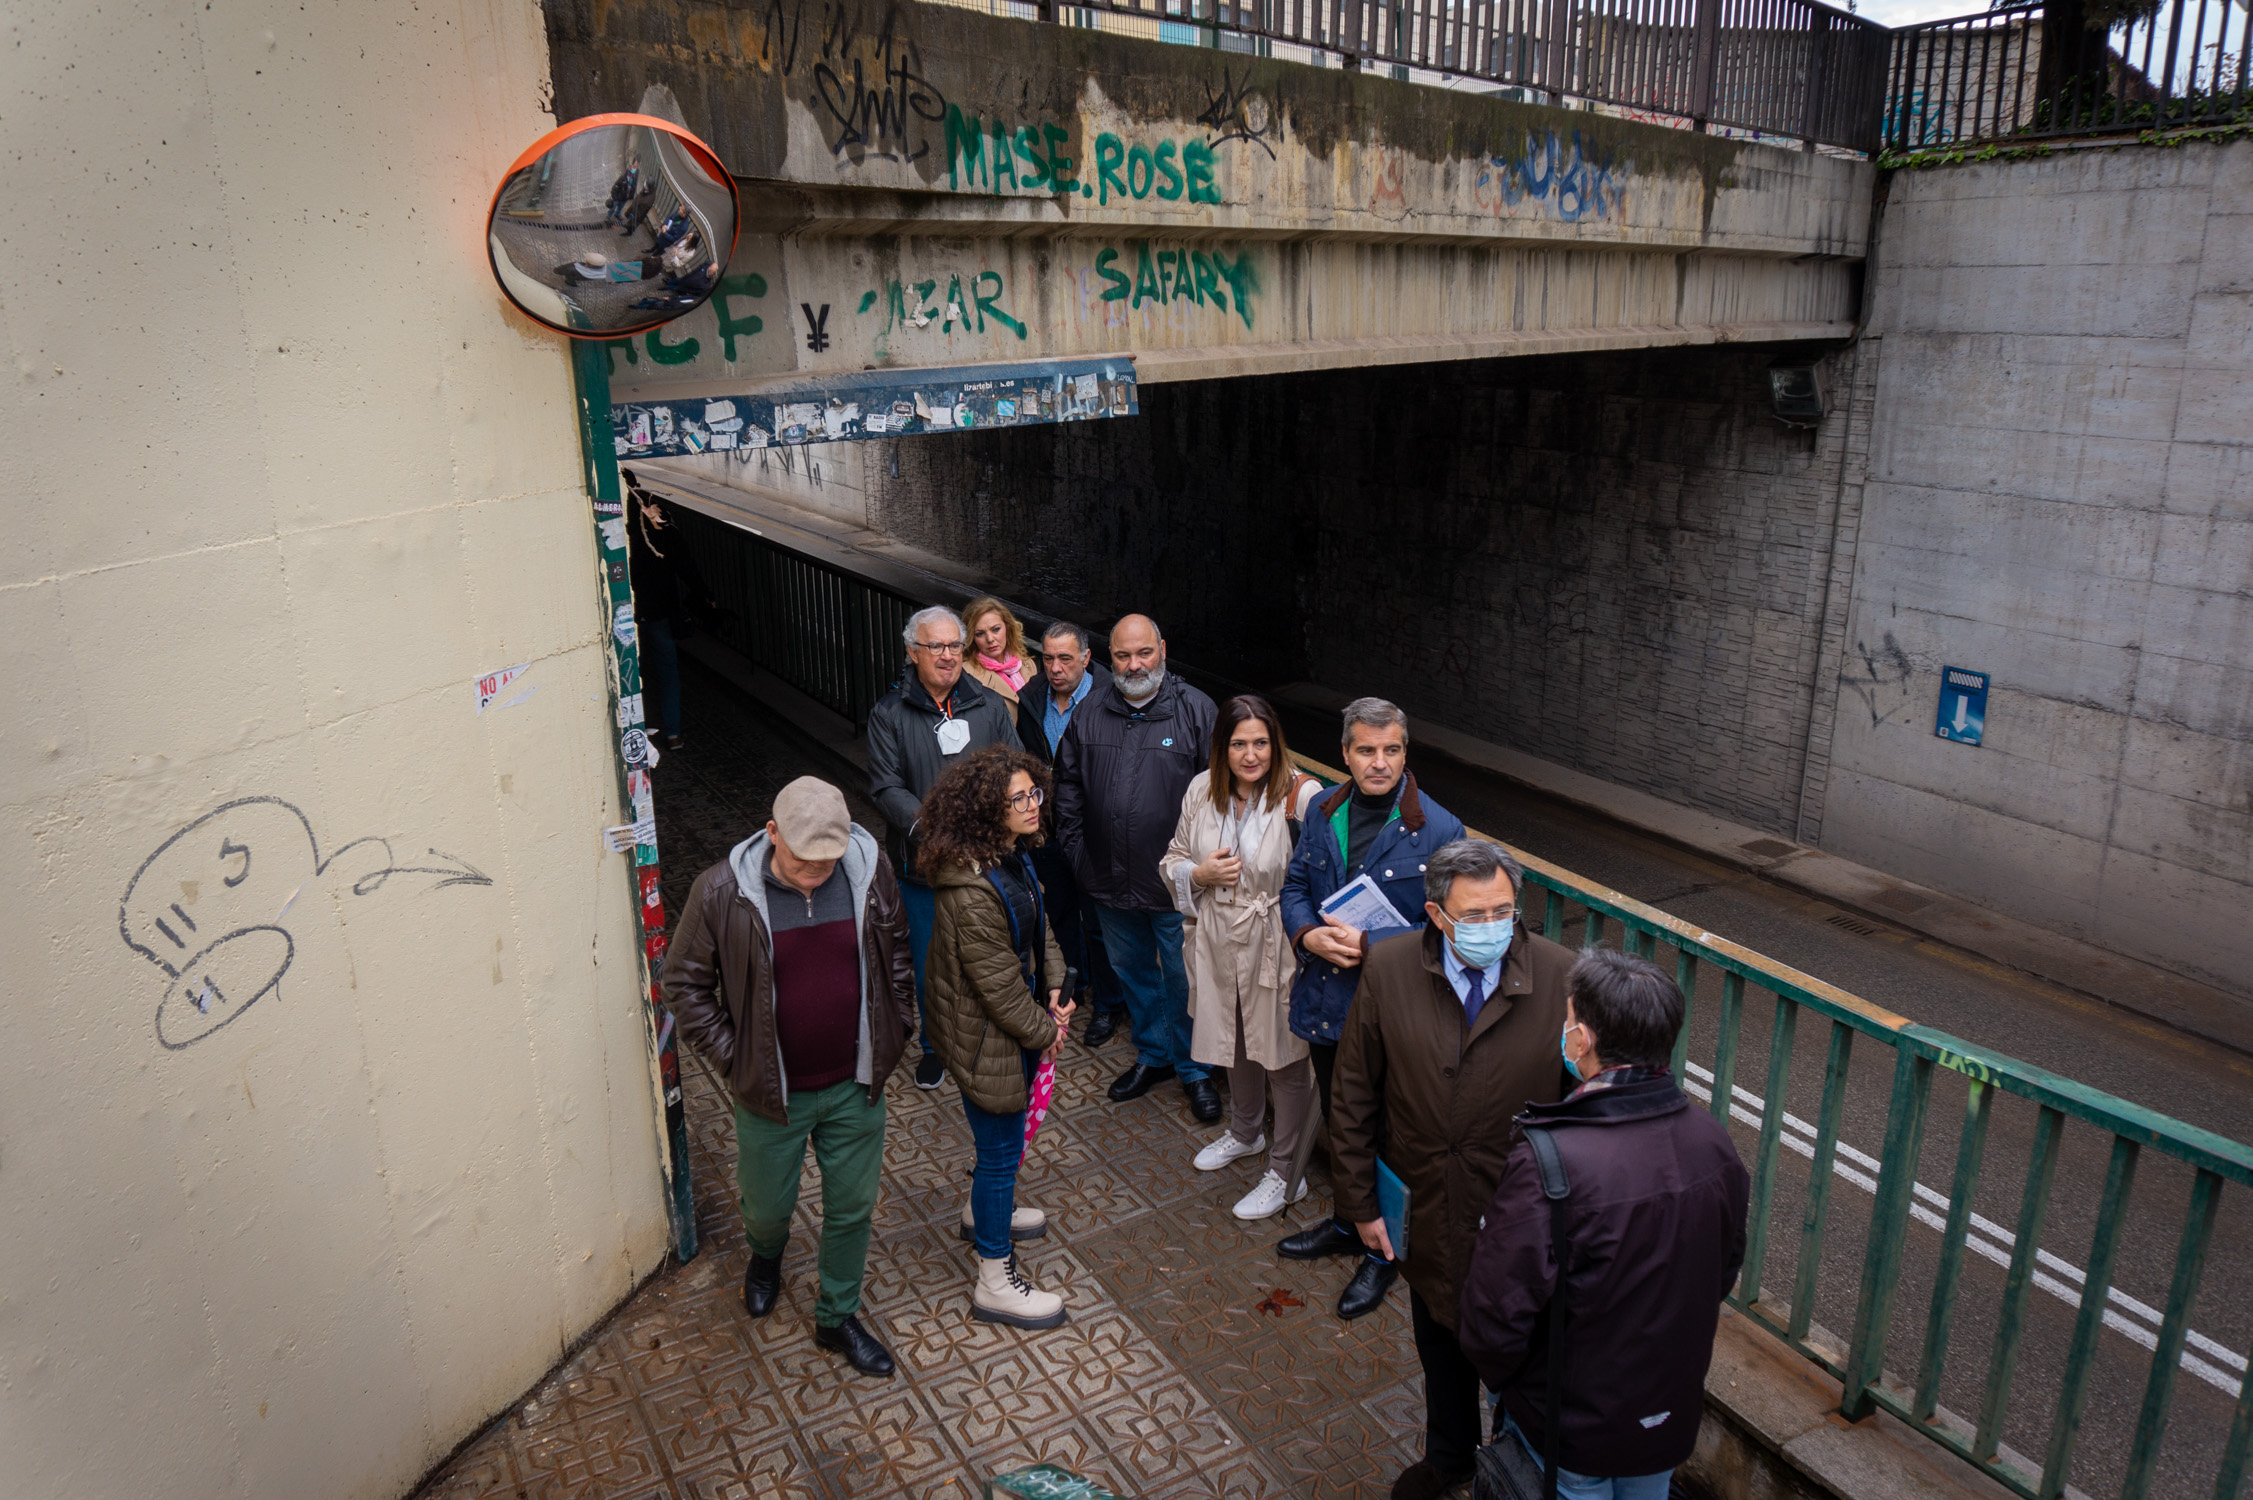 El PP reclama al alcalde más presencia policial en La Chana y denuncia inseguridad en el túnel de acceso